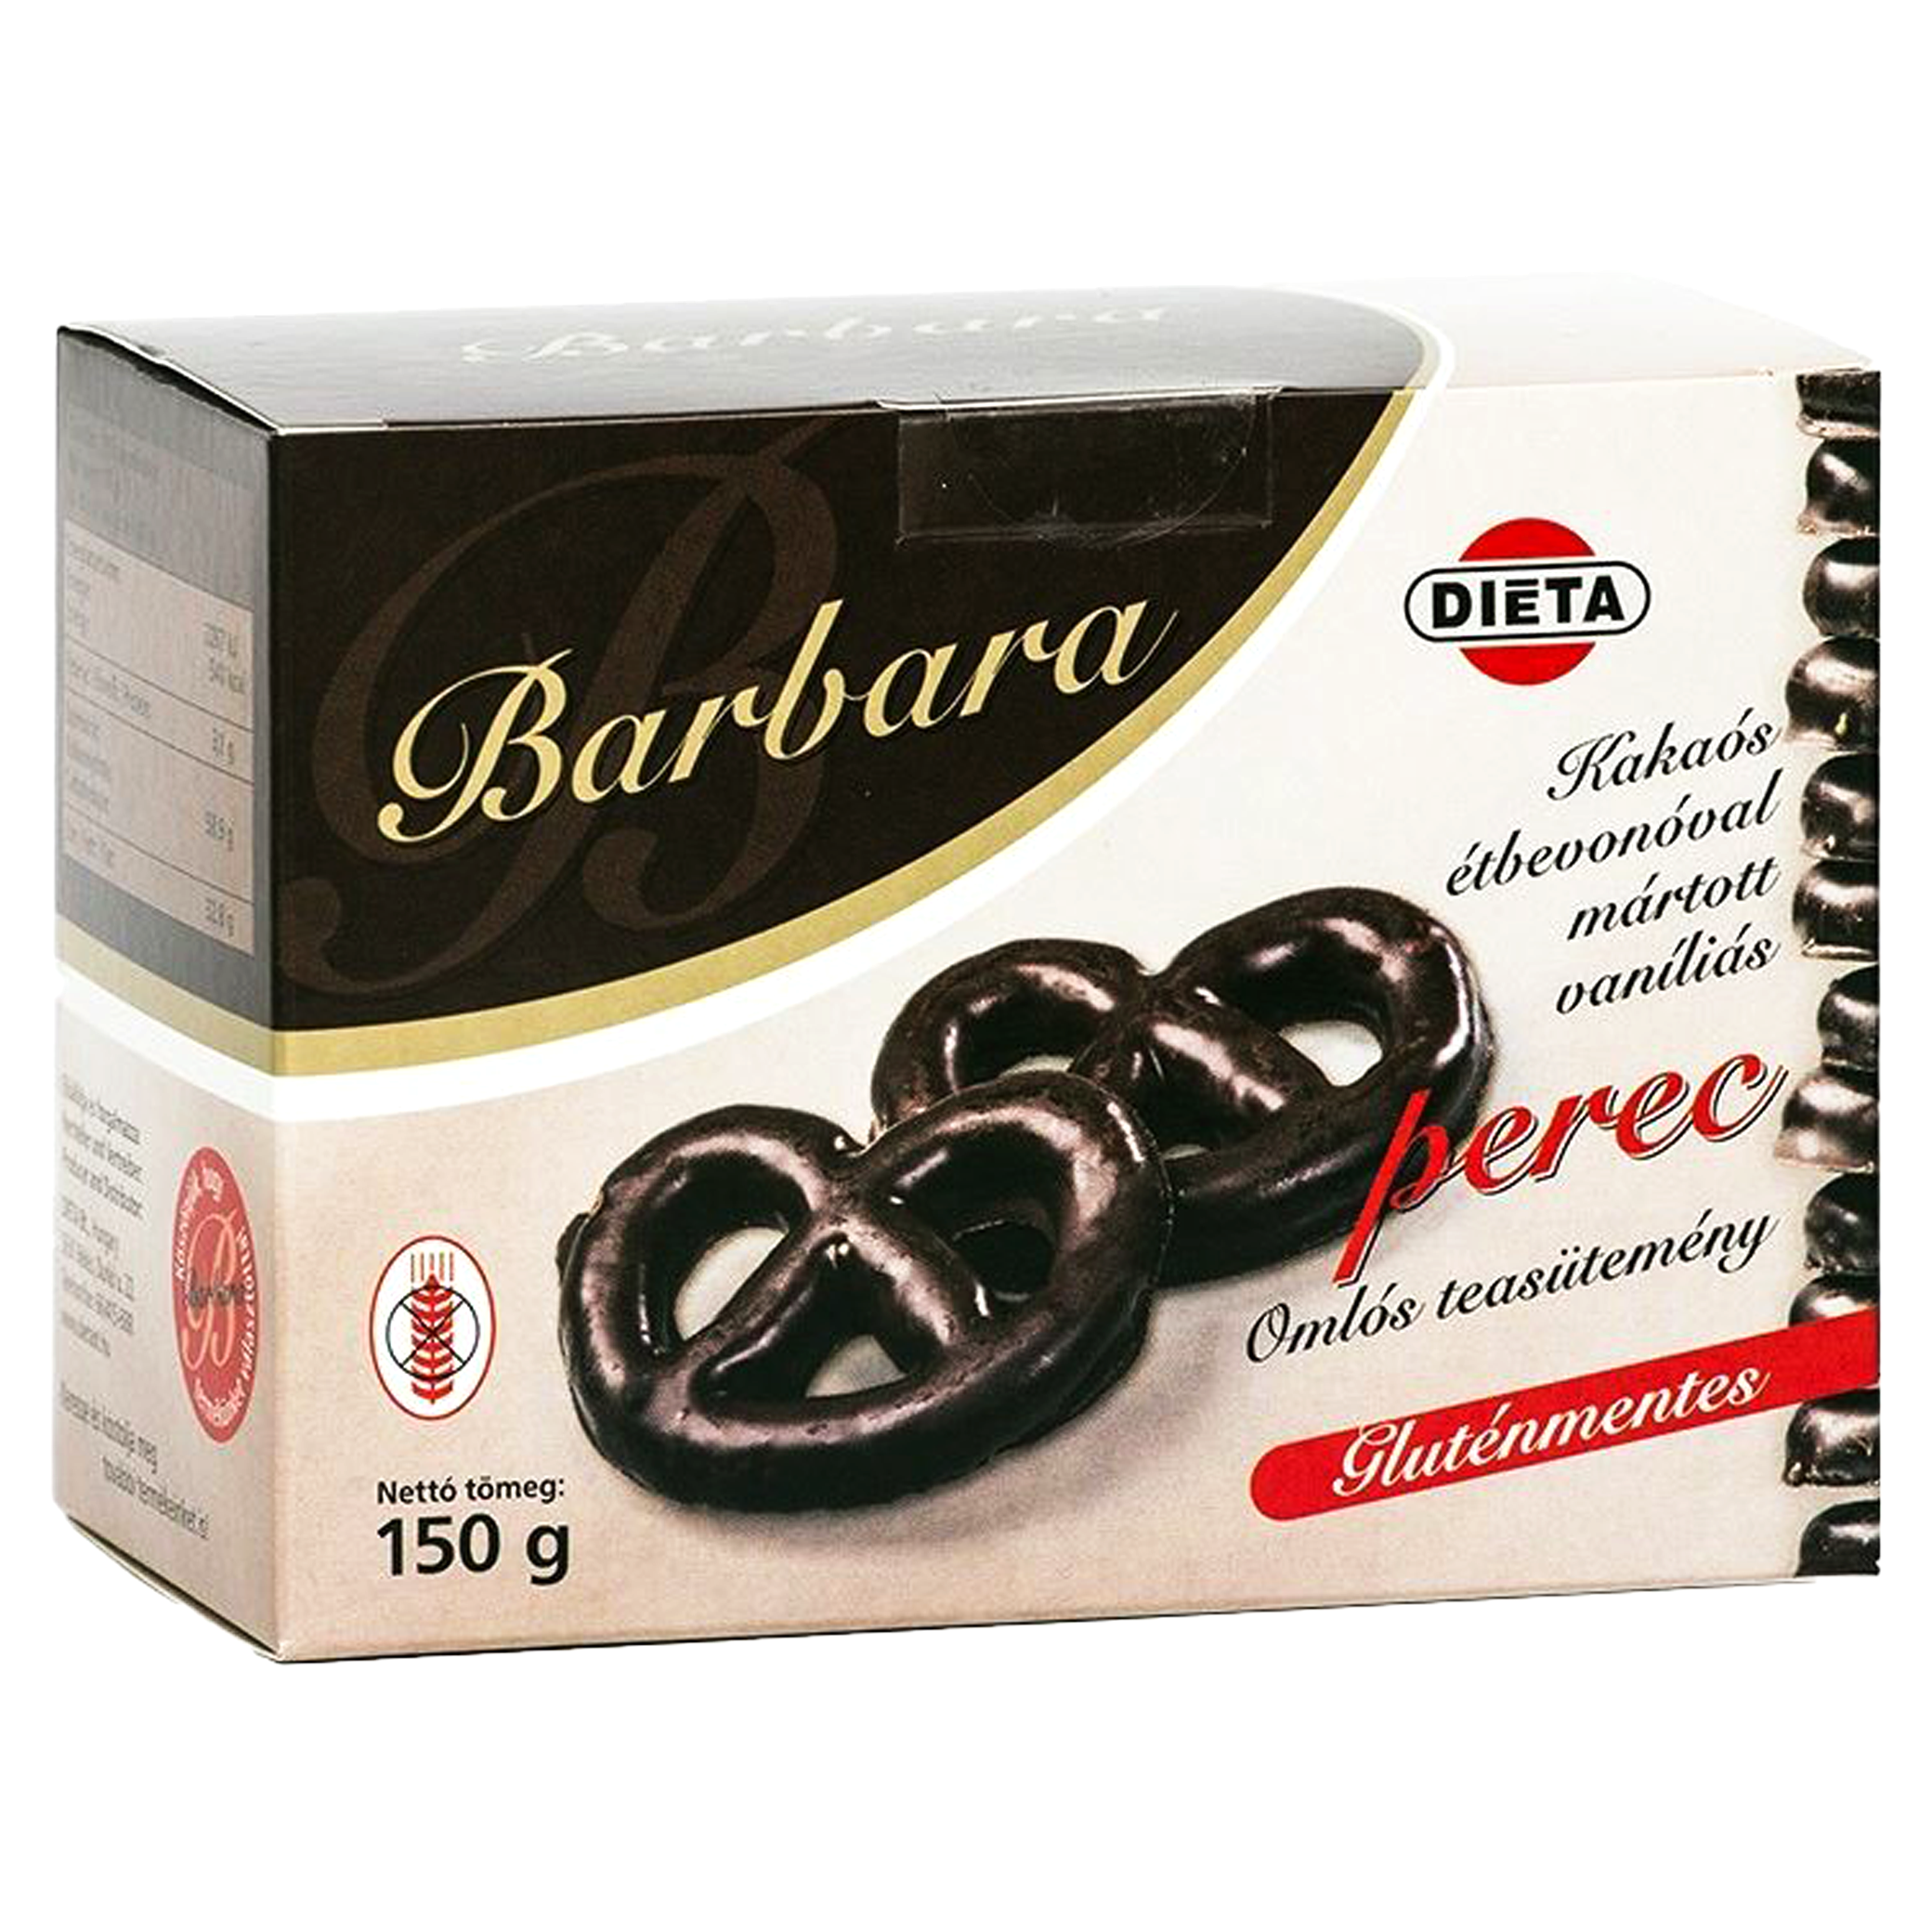 Covrigei fara gluten cu vanilie inveliti in ciocolata 150gr Barbara